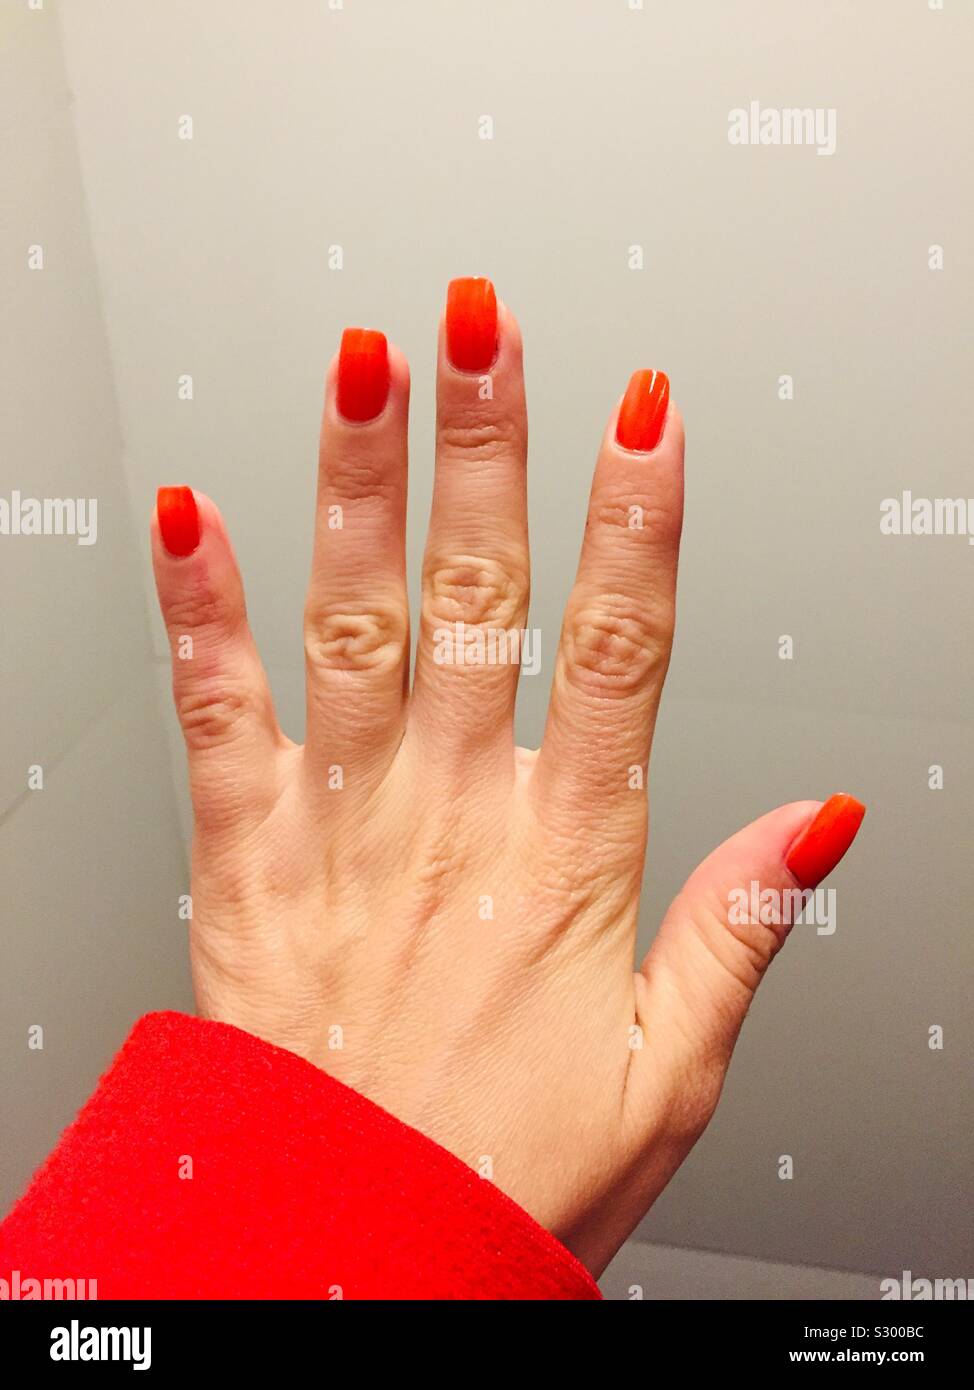 Rote nägel. Die jungen Mädchen Hand, deren Nägel haben rote Nagellack auf.  Roten Mantel mit dem roten Maniküre zu gehen Stockfotografie - Alamy